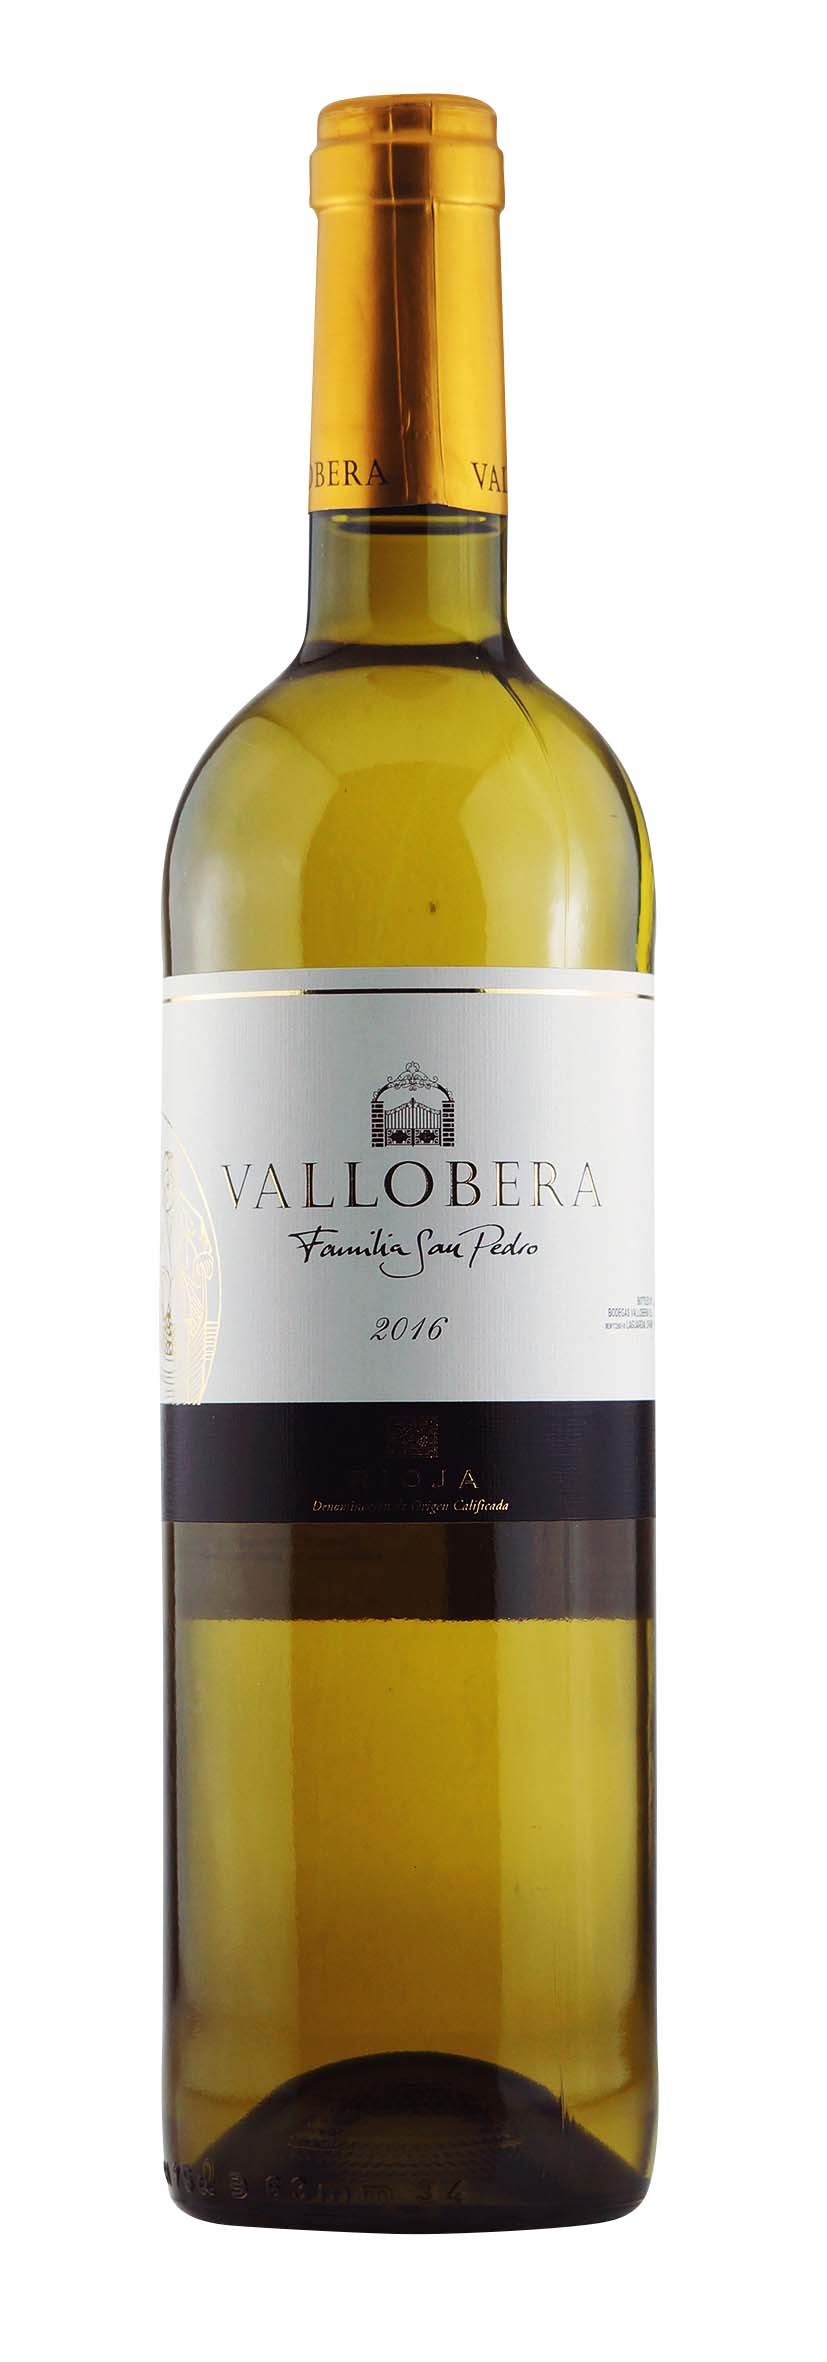 Rioja DOCa Vallobera Blanco 2016